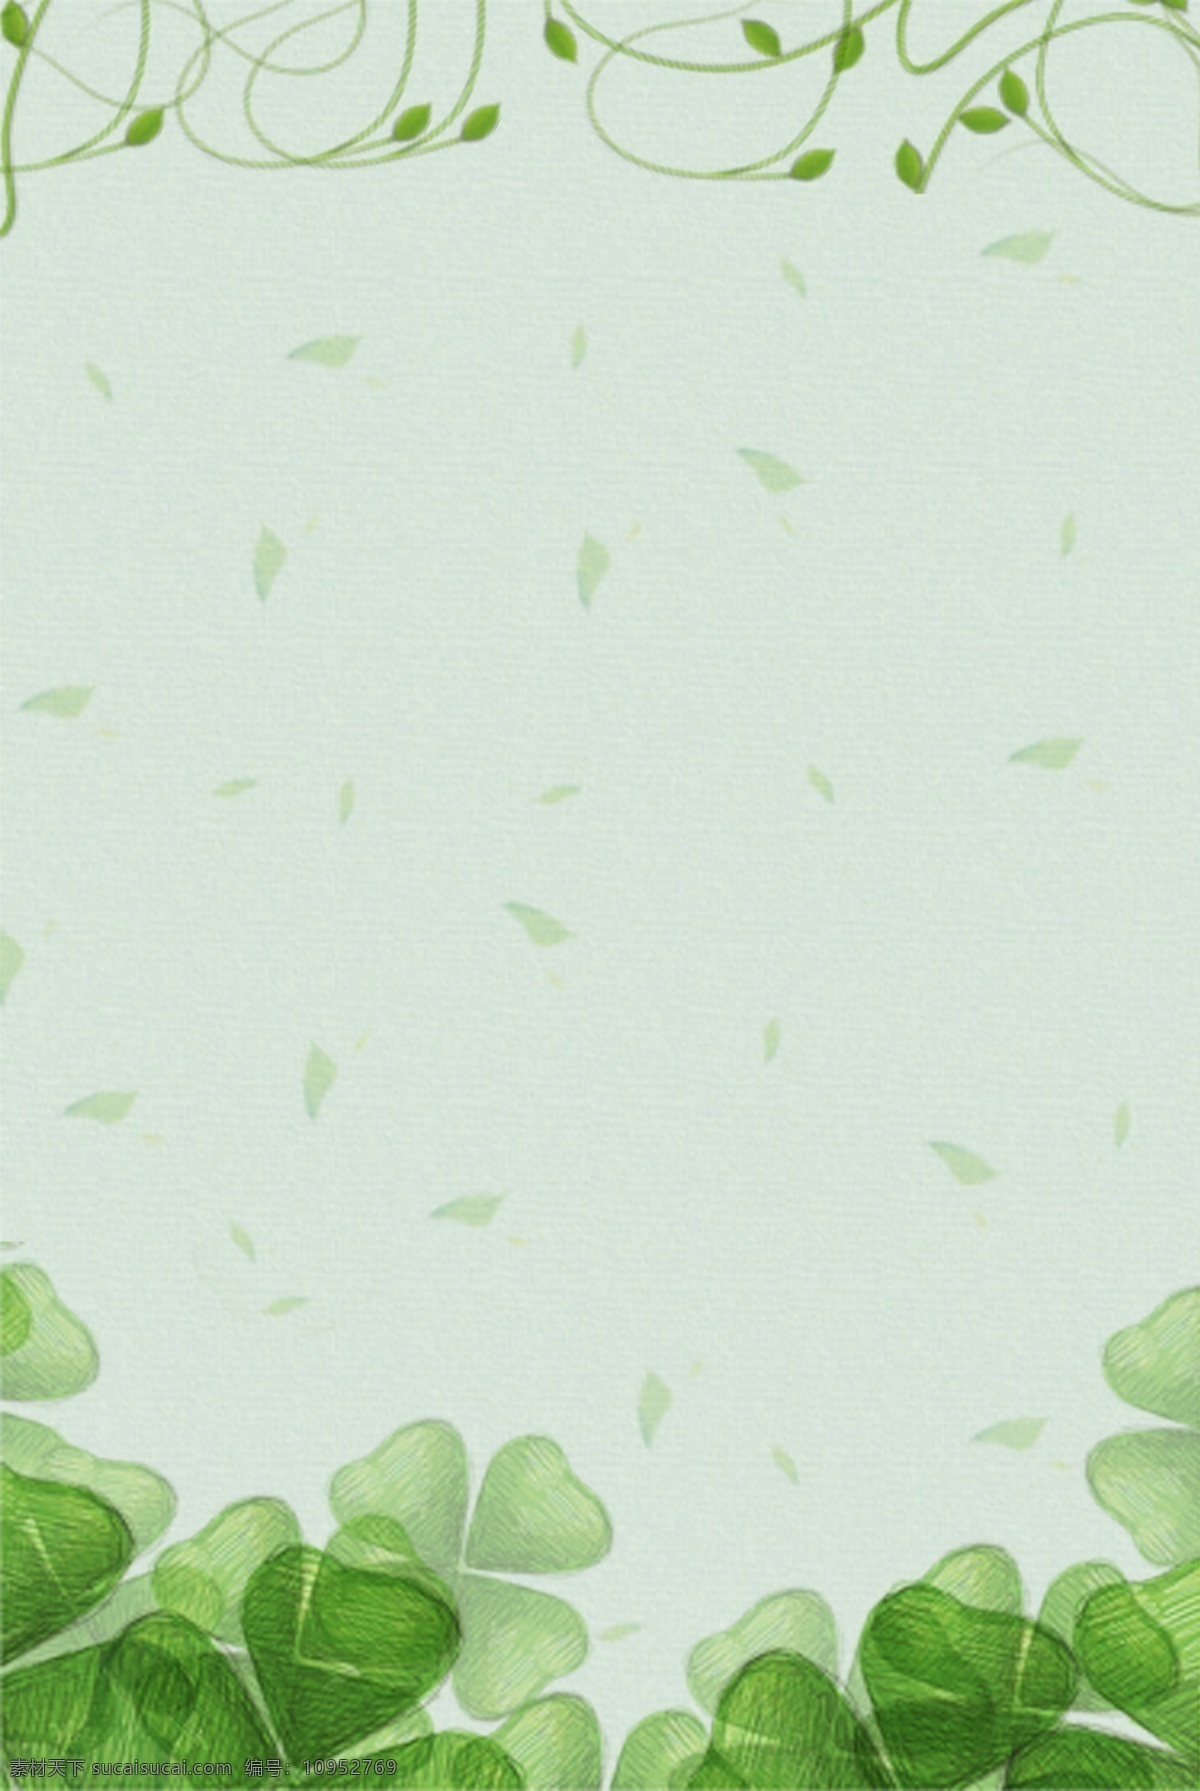 夏天 绿色 树叶 质感 纹理 海报 背景 绿色树叶 树枝 清新简约 海报背景 平面背景 psd分层